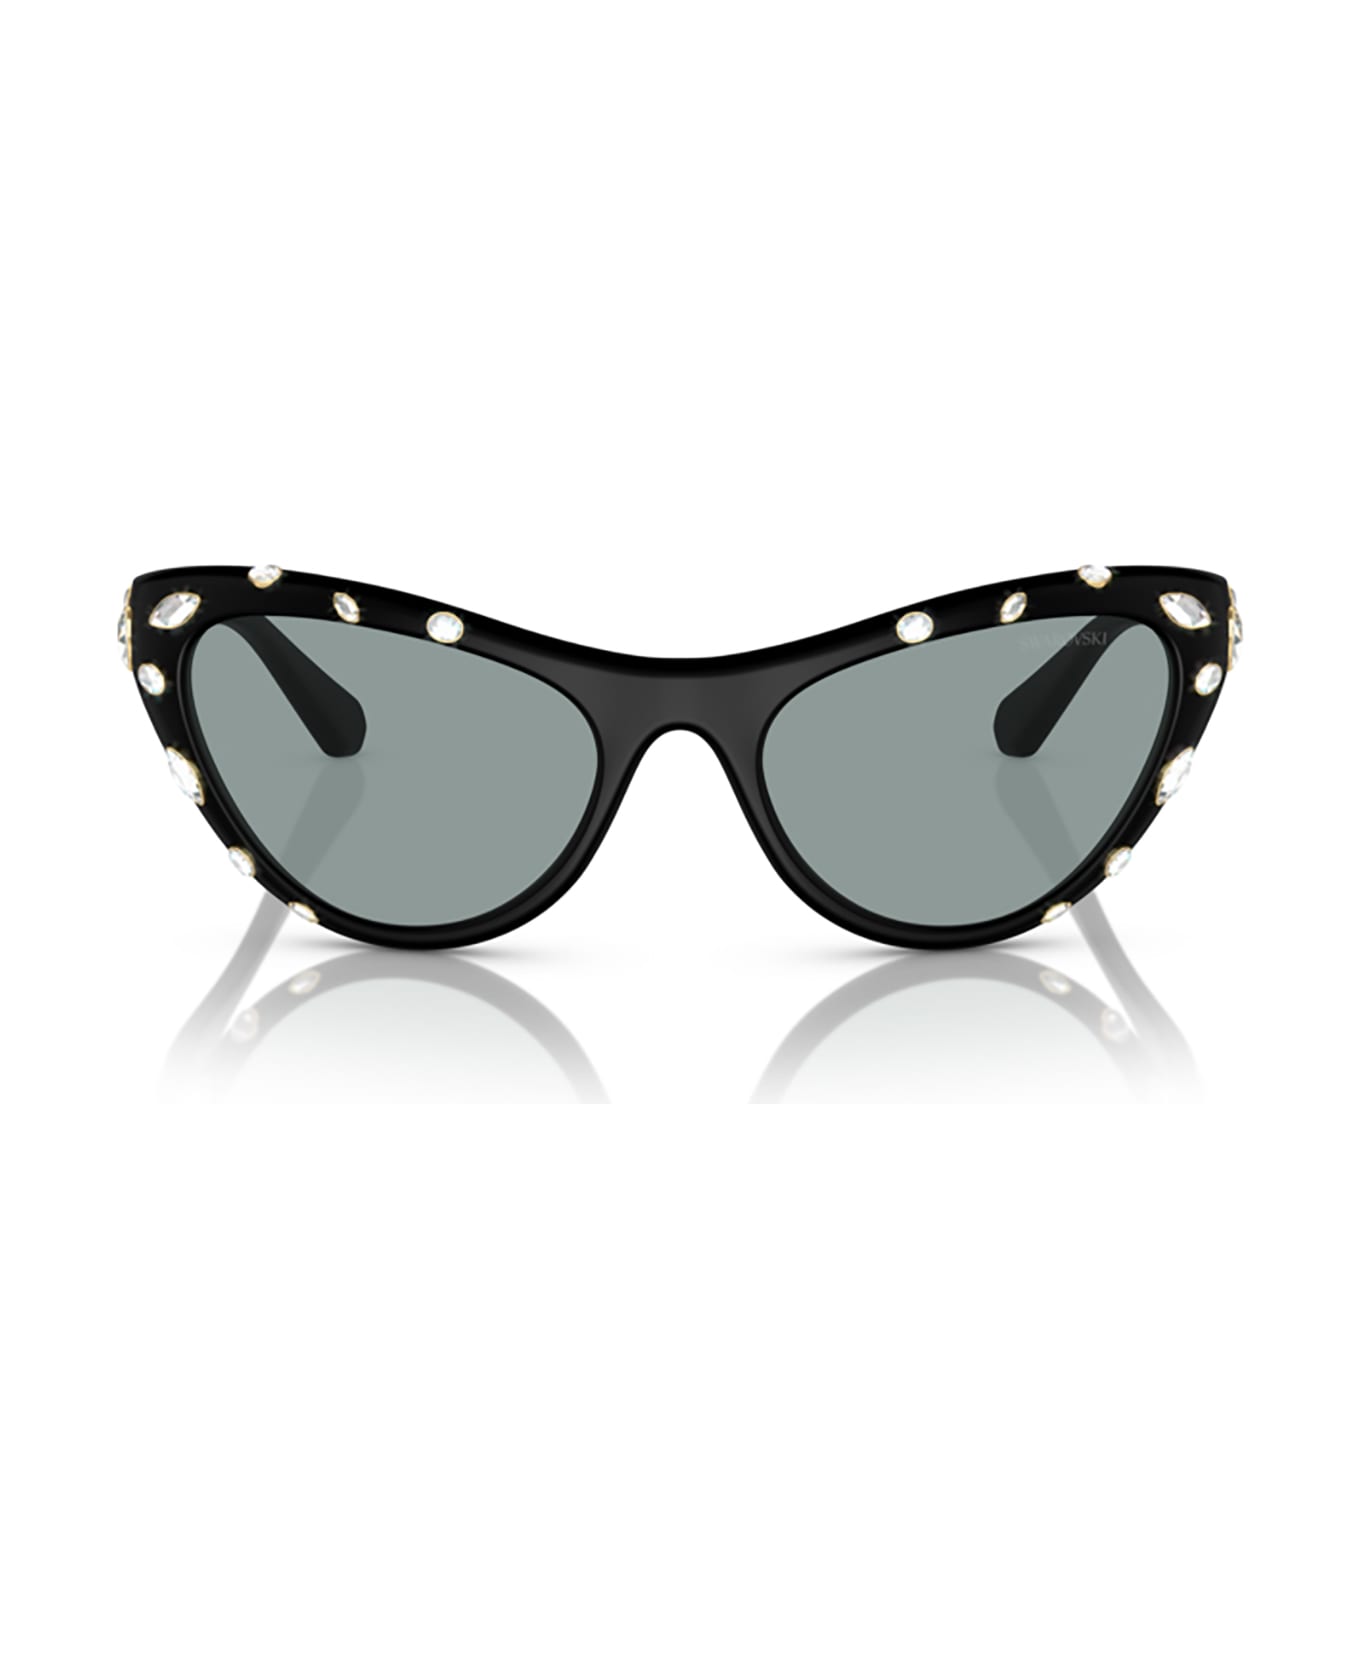 Swarovski Sk6007 Matte Black Sunglasses - Matte Black